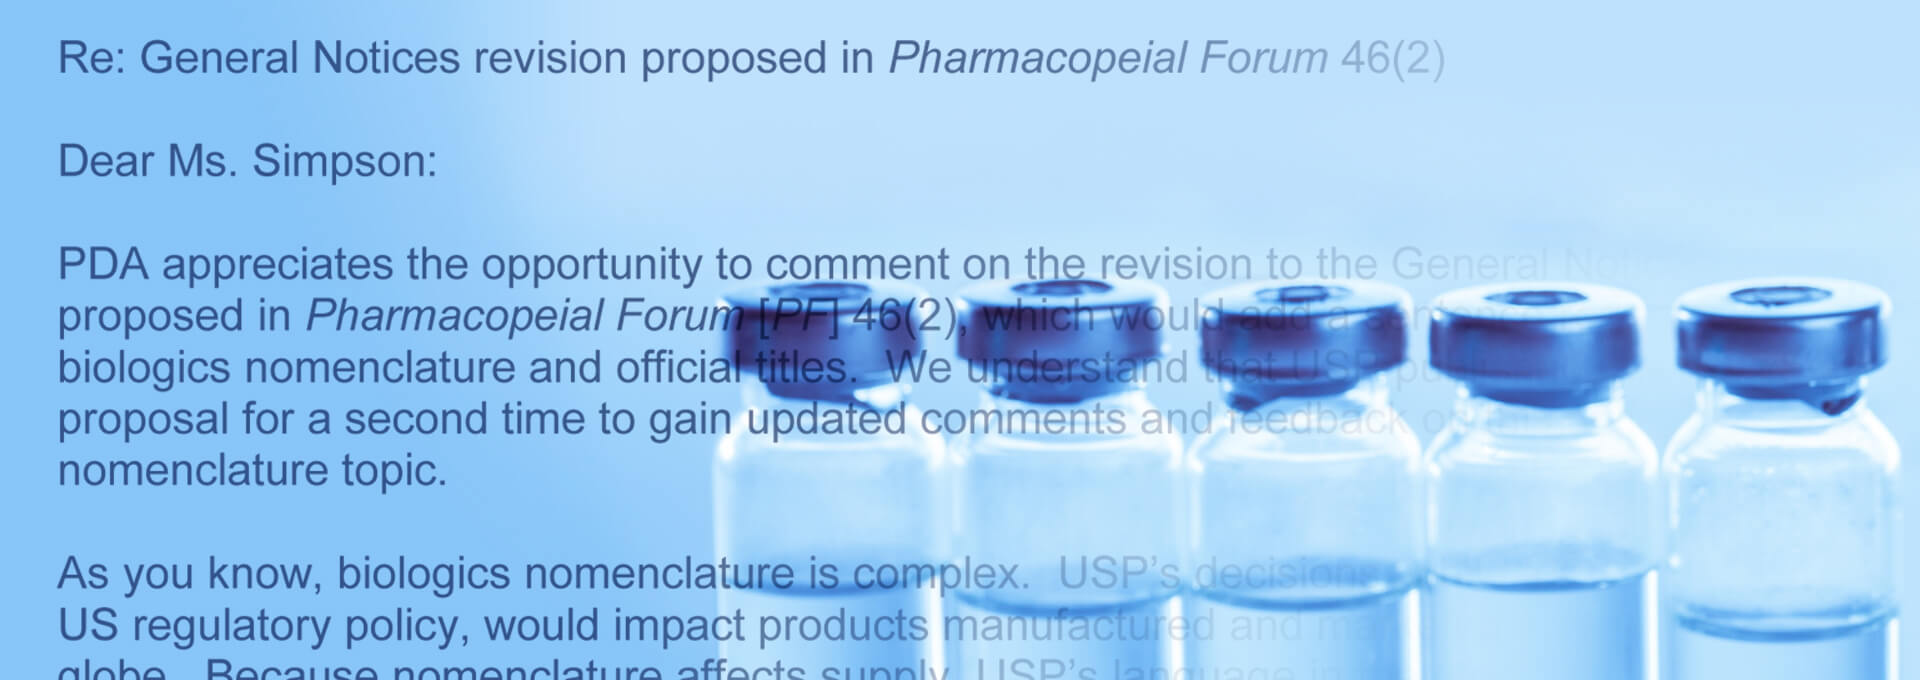 PDA要求暂停USP的生物制剂命名建议